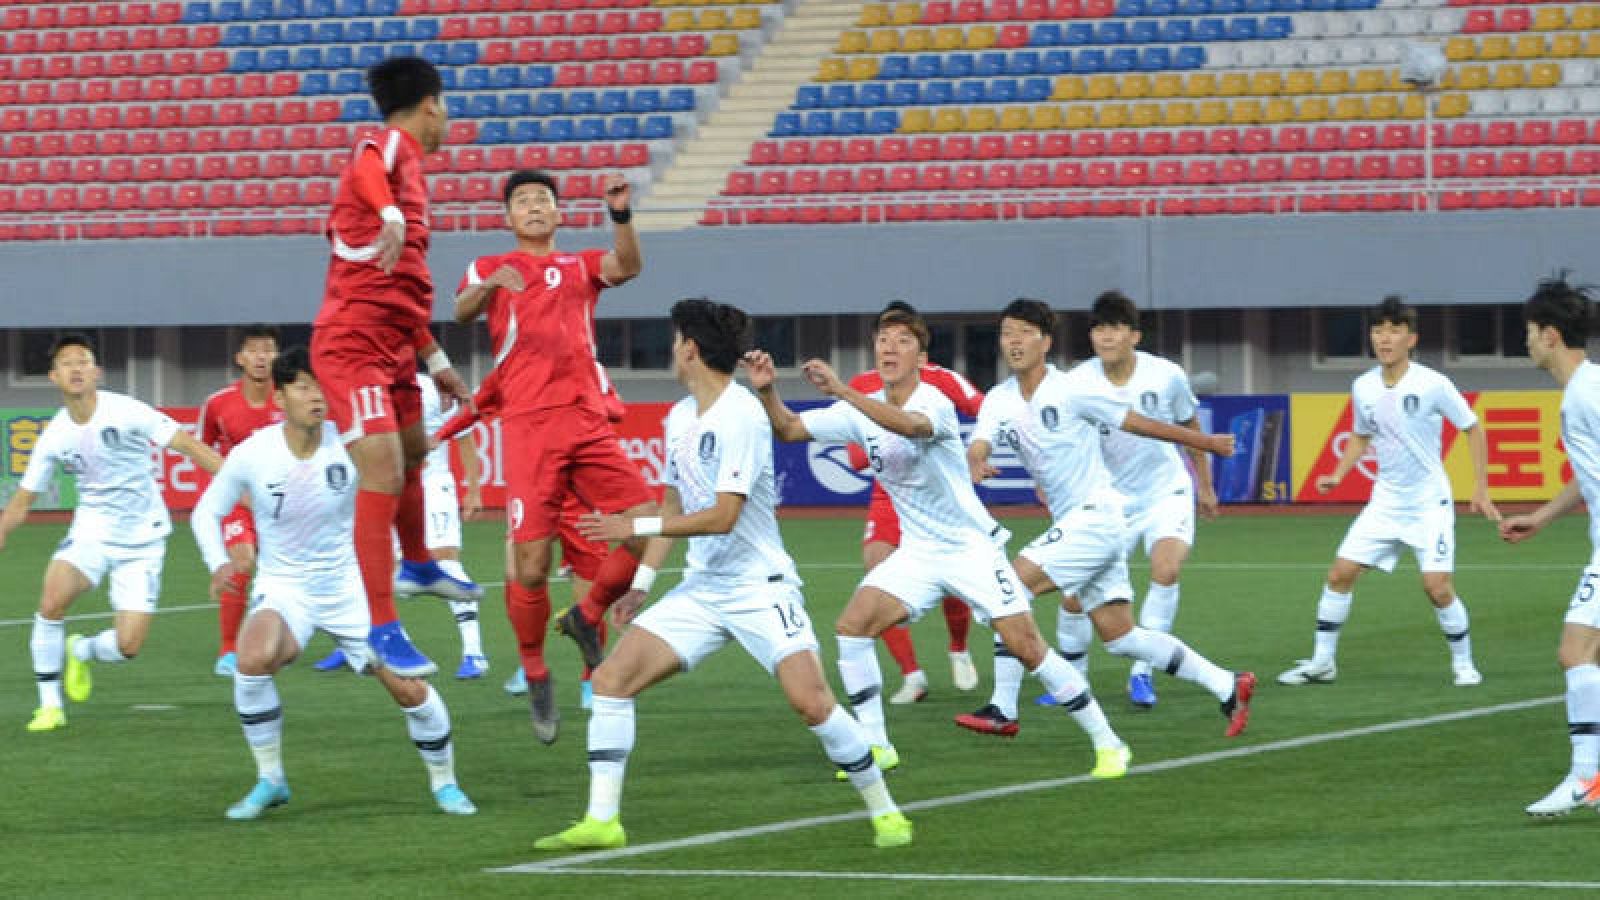 Imagen del partido entre las selecciones de las dos Coreas jugado este martes en Pyongyag difundida por la confederación asiática de fútbol